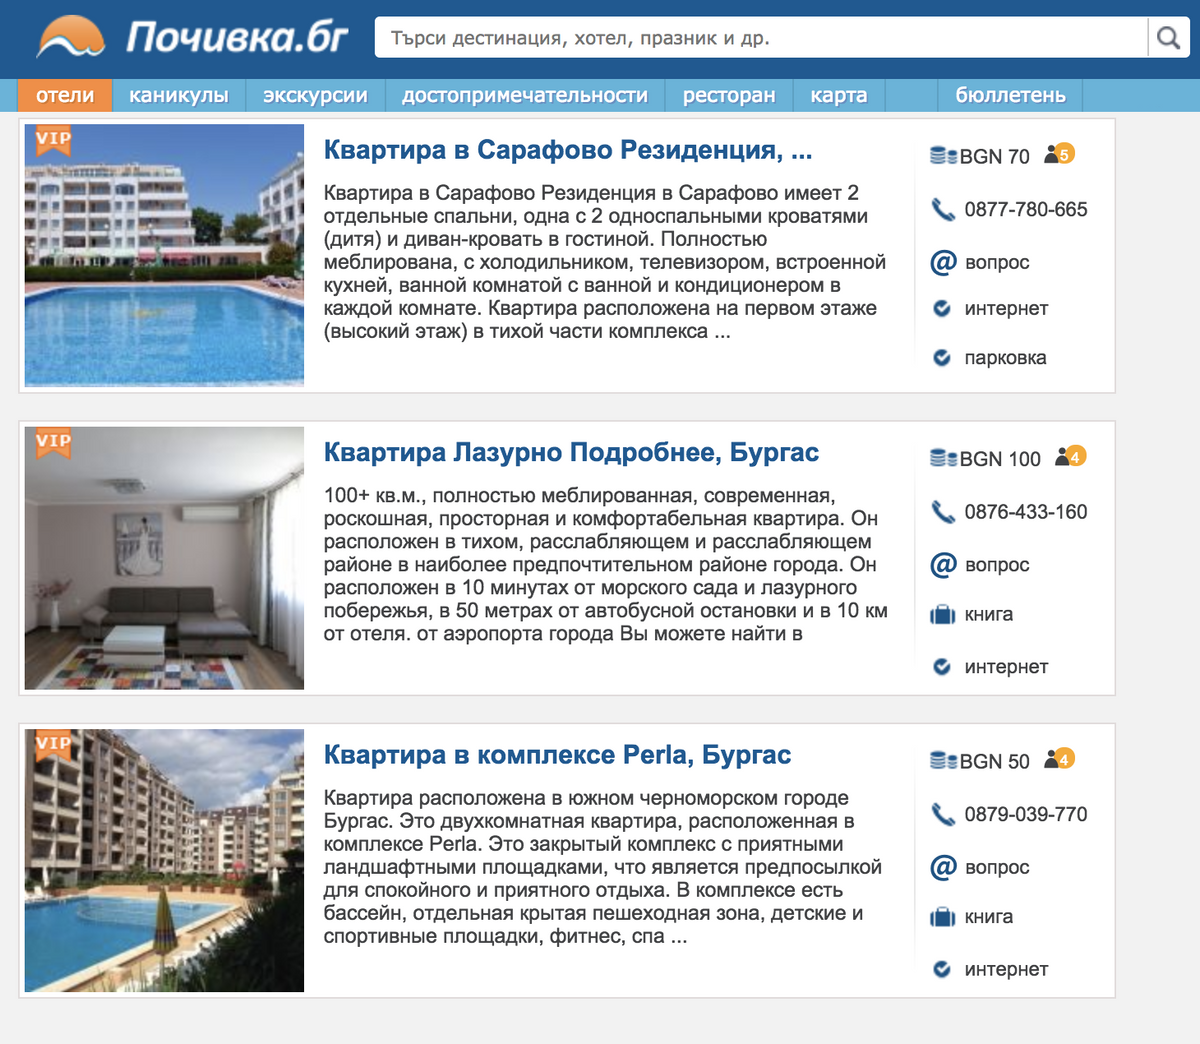 Летом квартиры в Бургасе сдаются за 50—100 левов (1930—3860 <span class=ruble>Р</span>) в сутки. В несезон их сдают за 200—300 левов (7720—11 600 <span class=ruble>Р</span>) в месяц